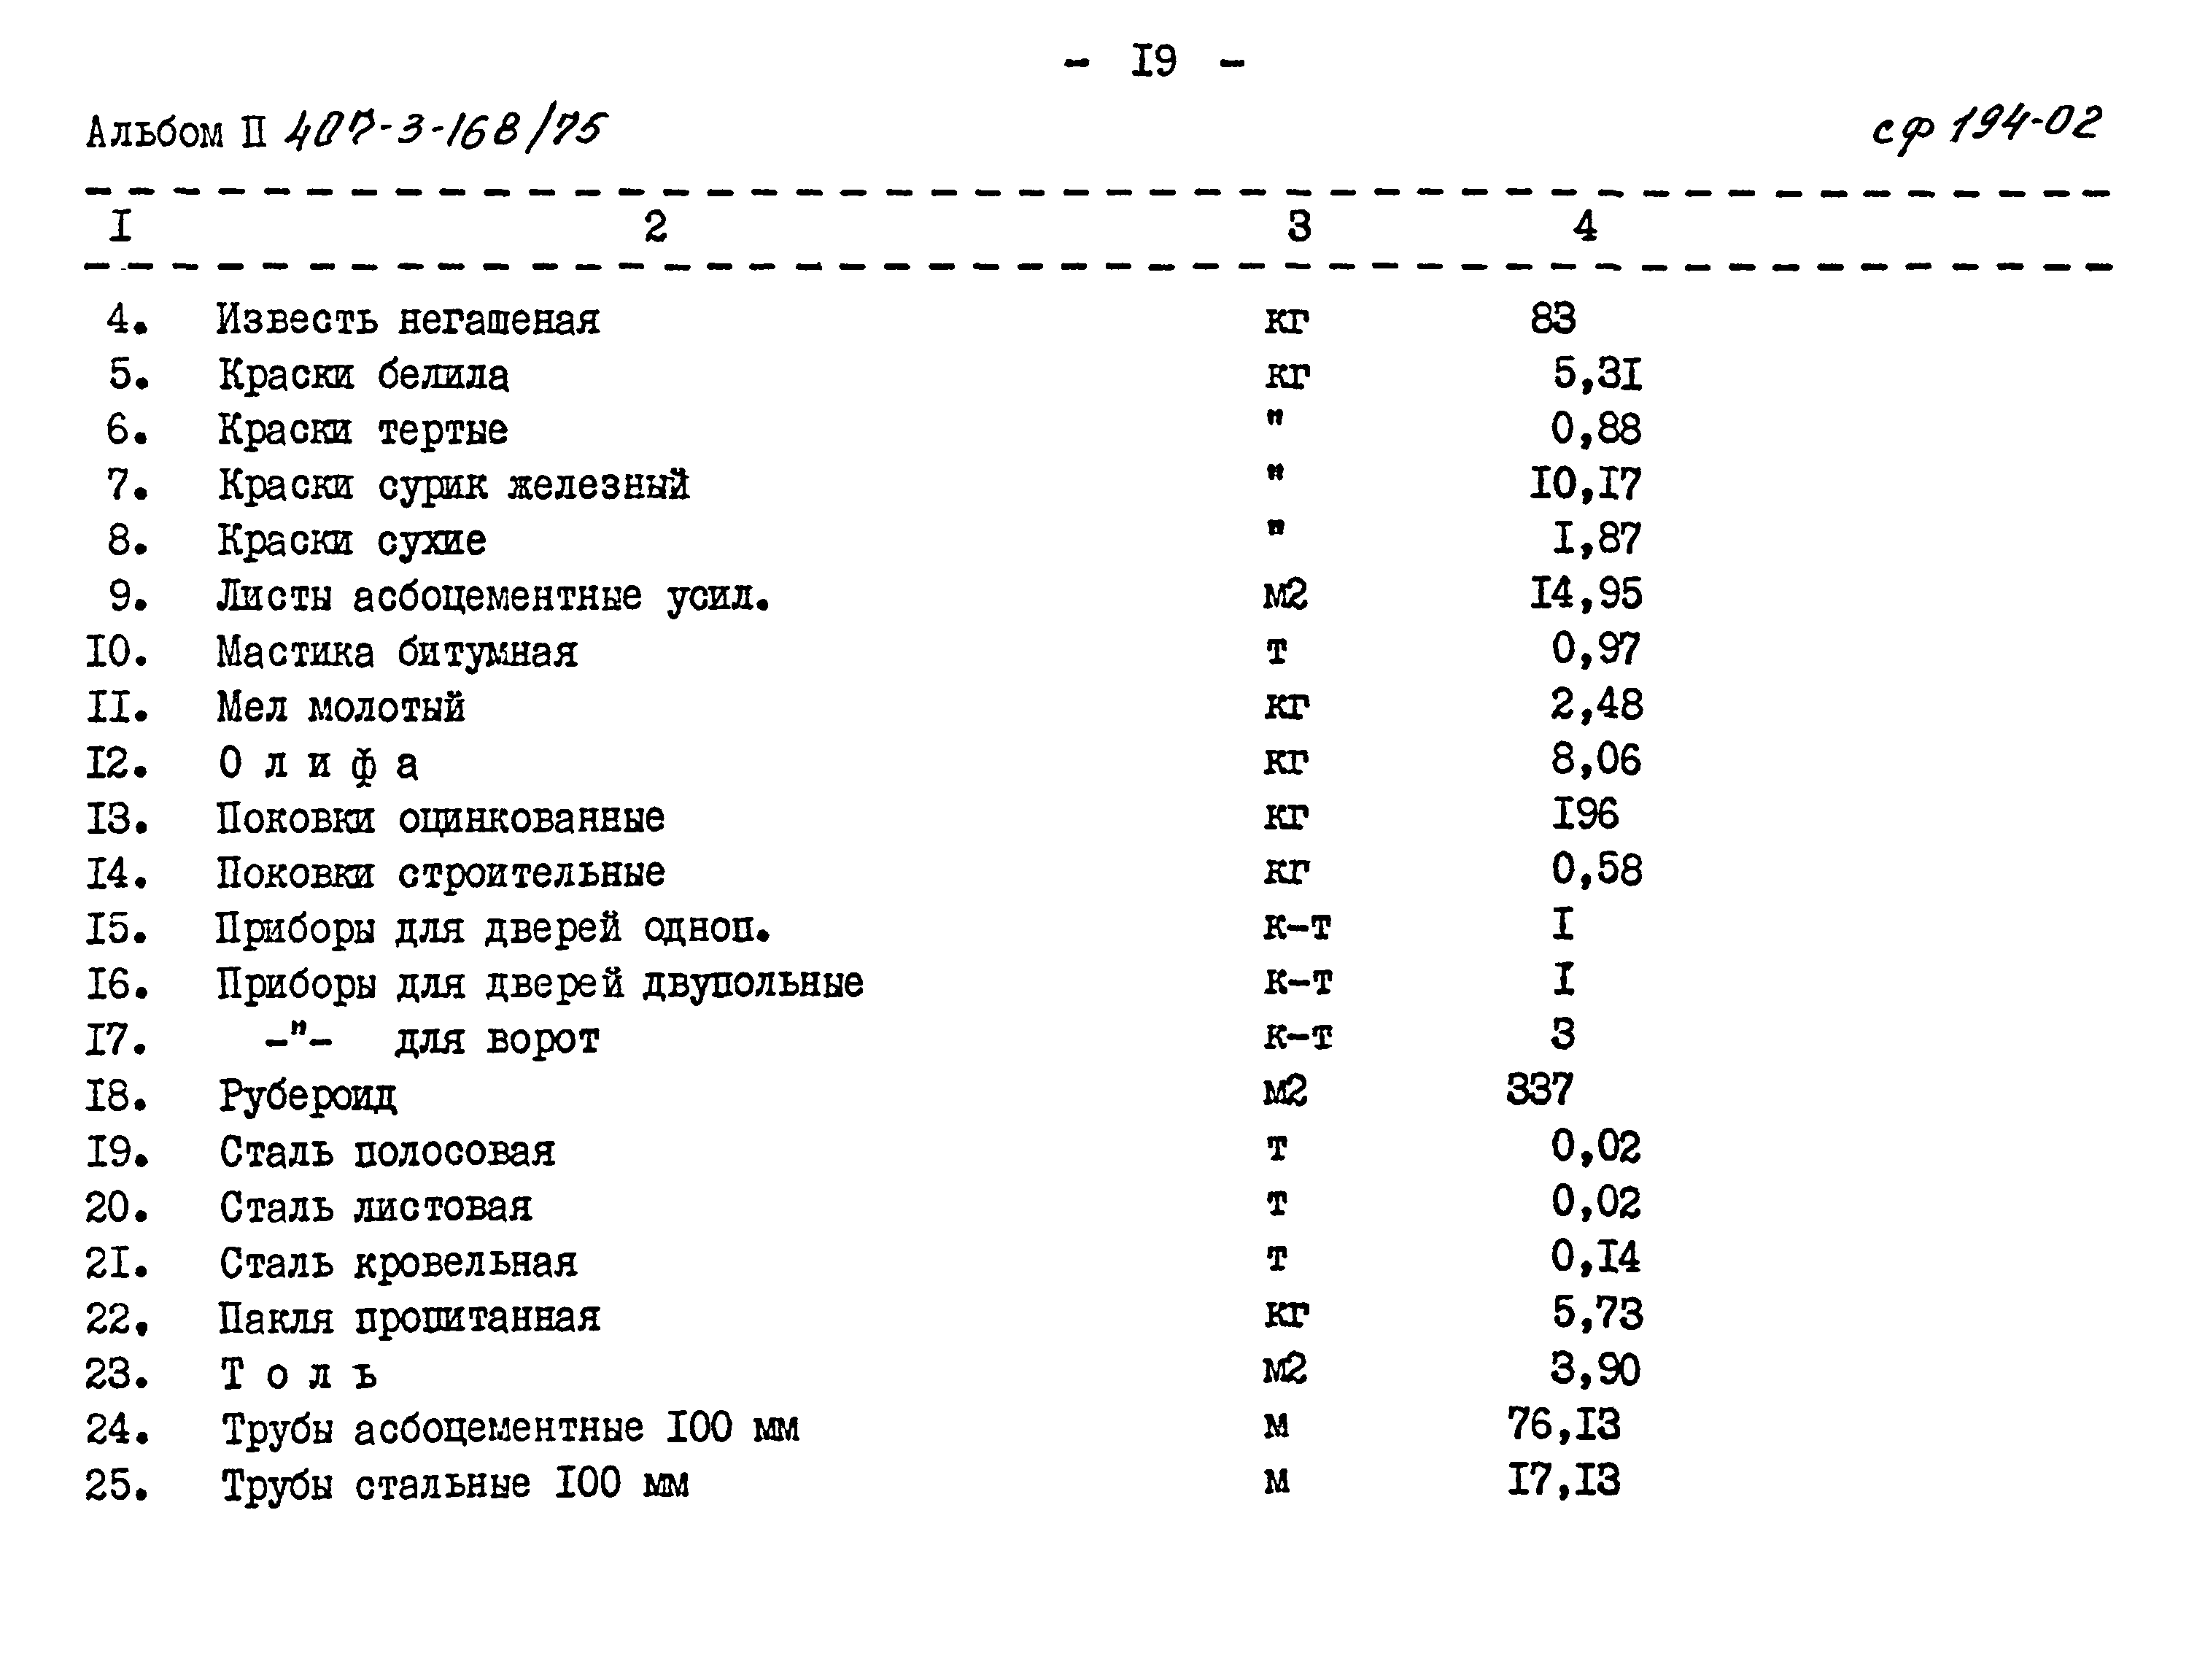 Типовой проект 407-3-168/75